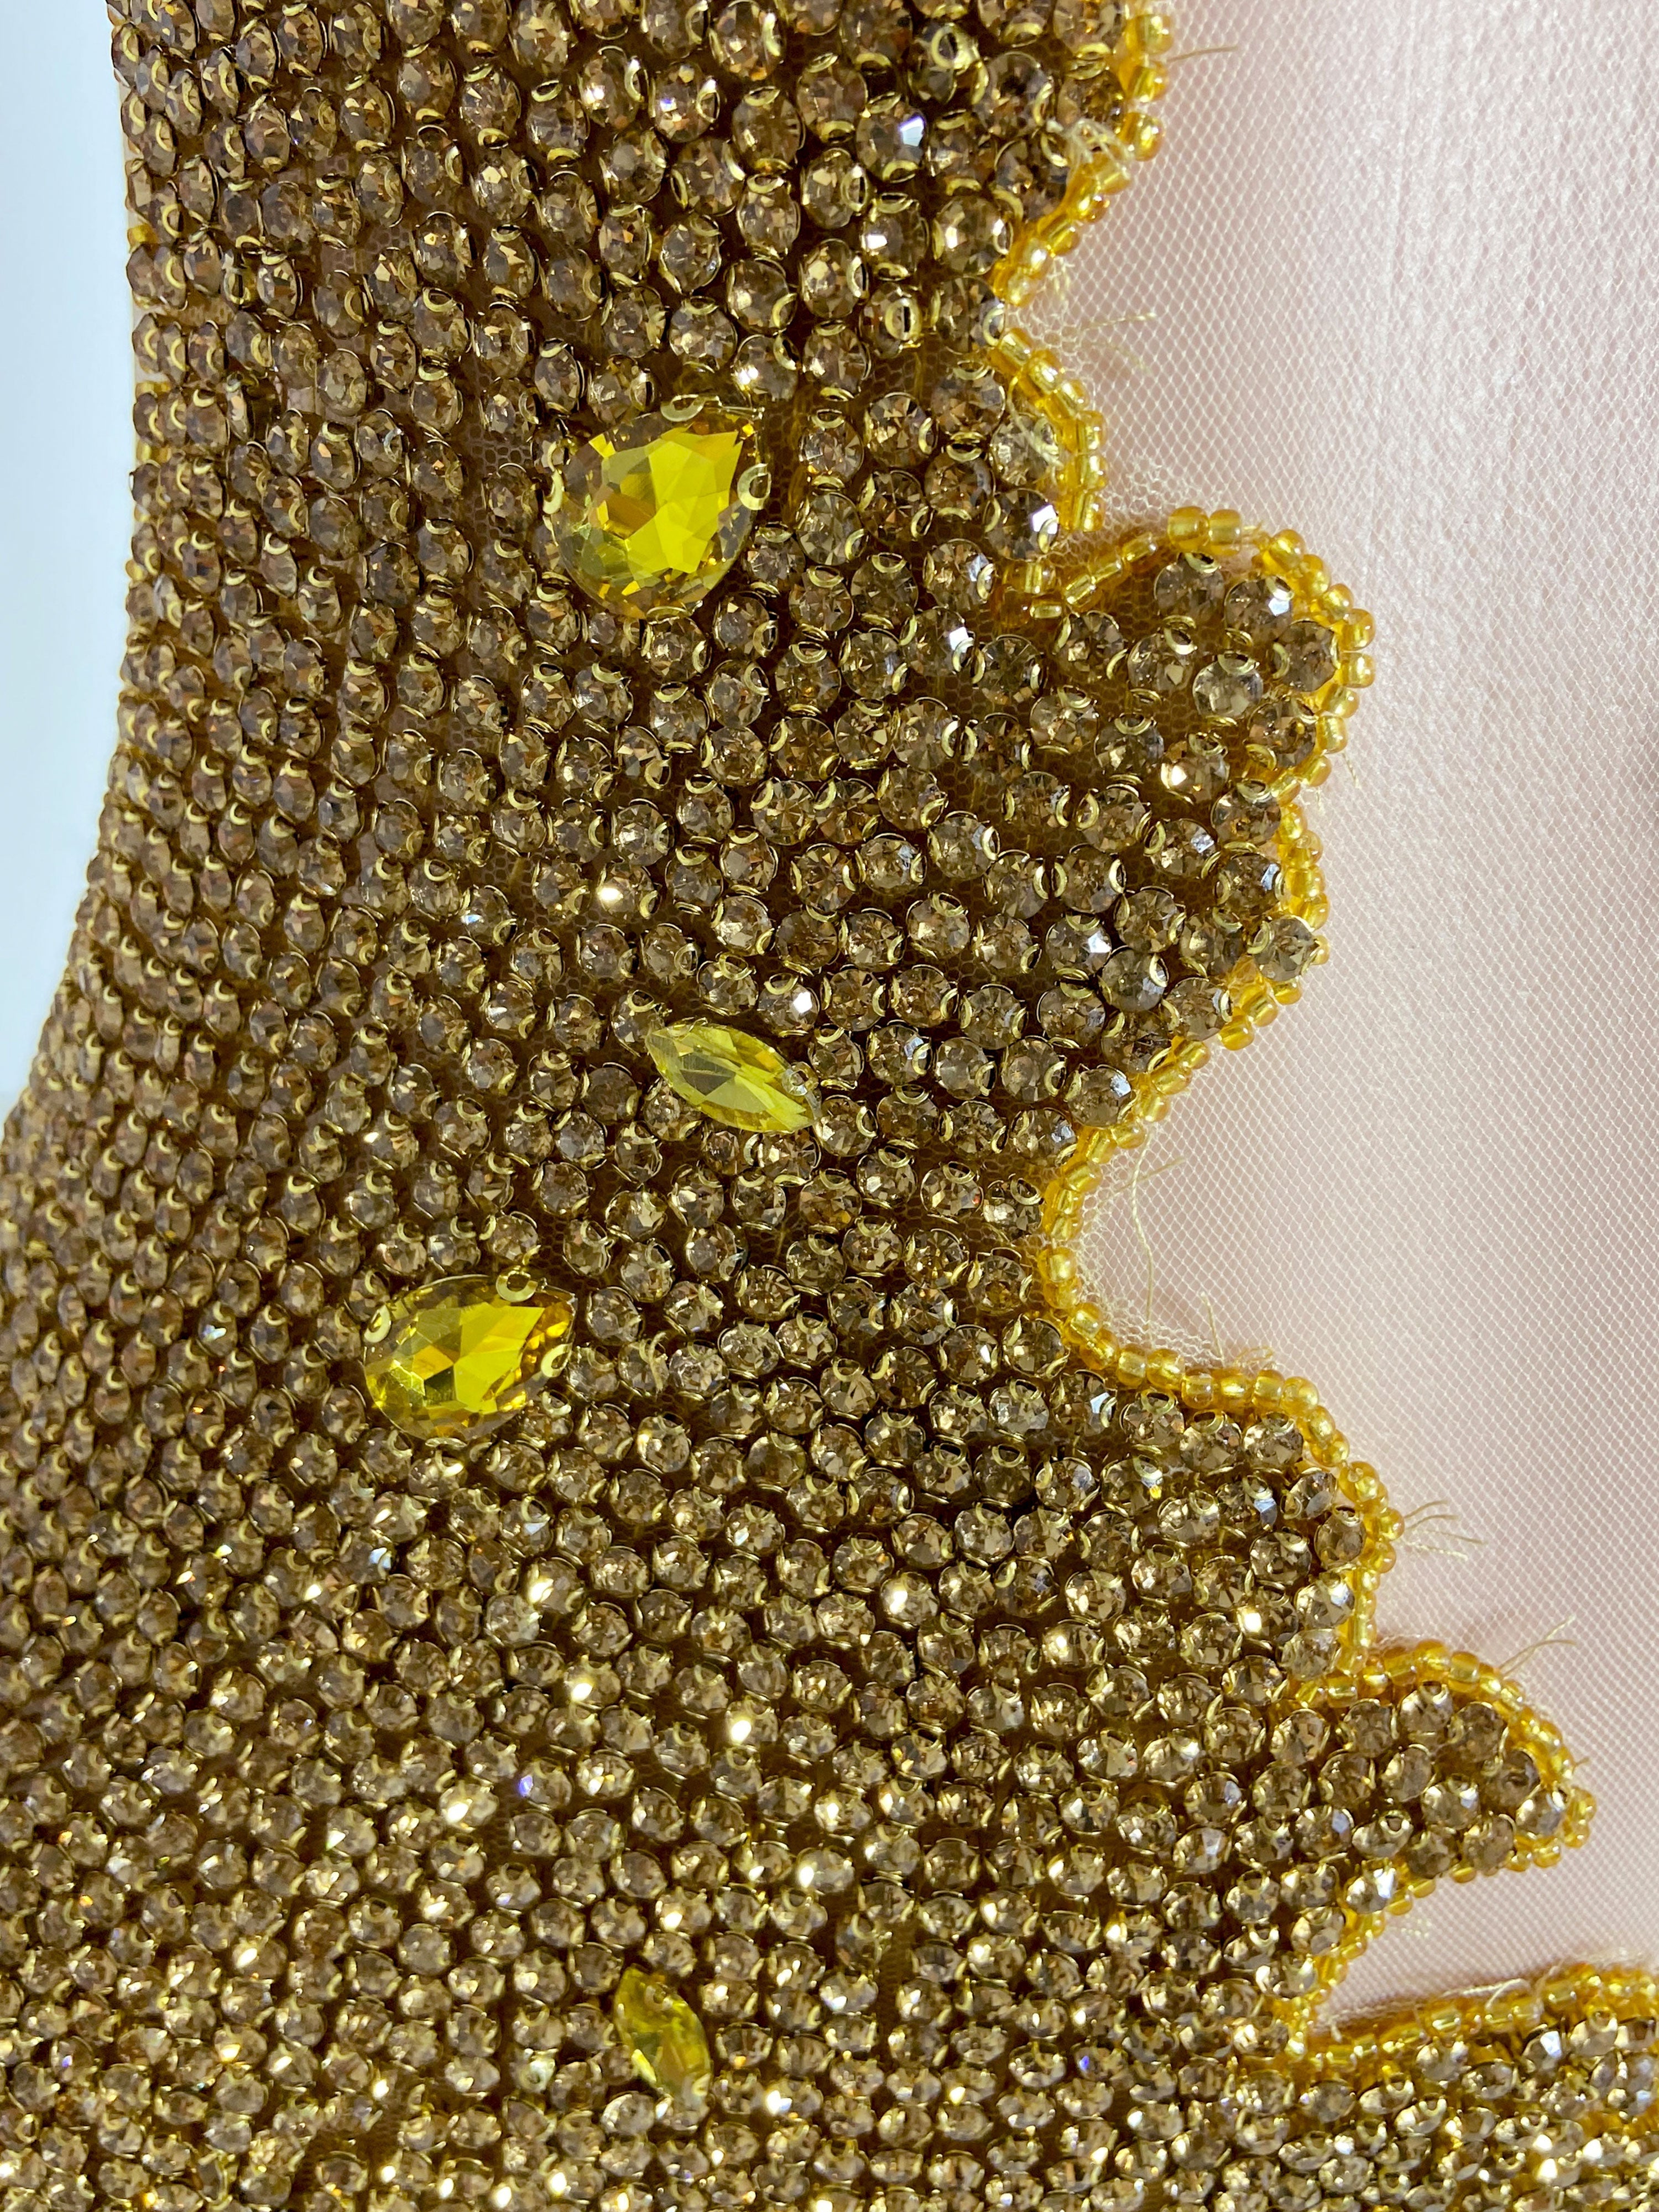 Golden Alluring Glitter Halter Mini Dress